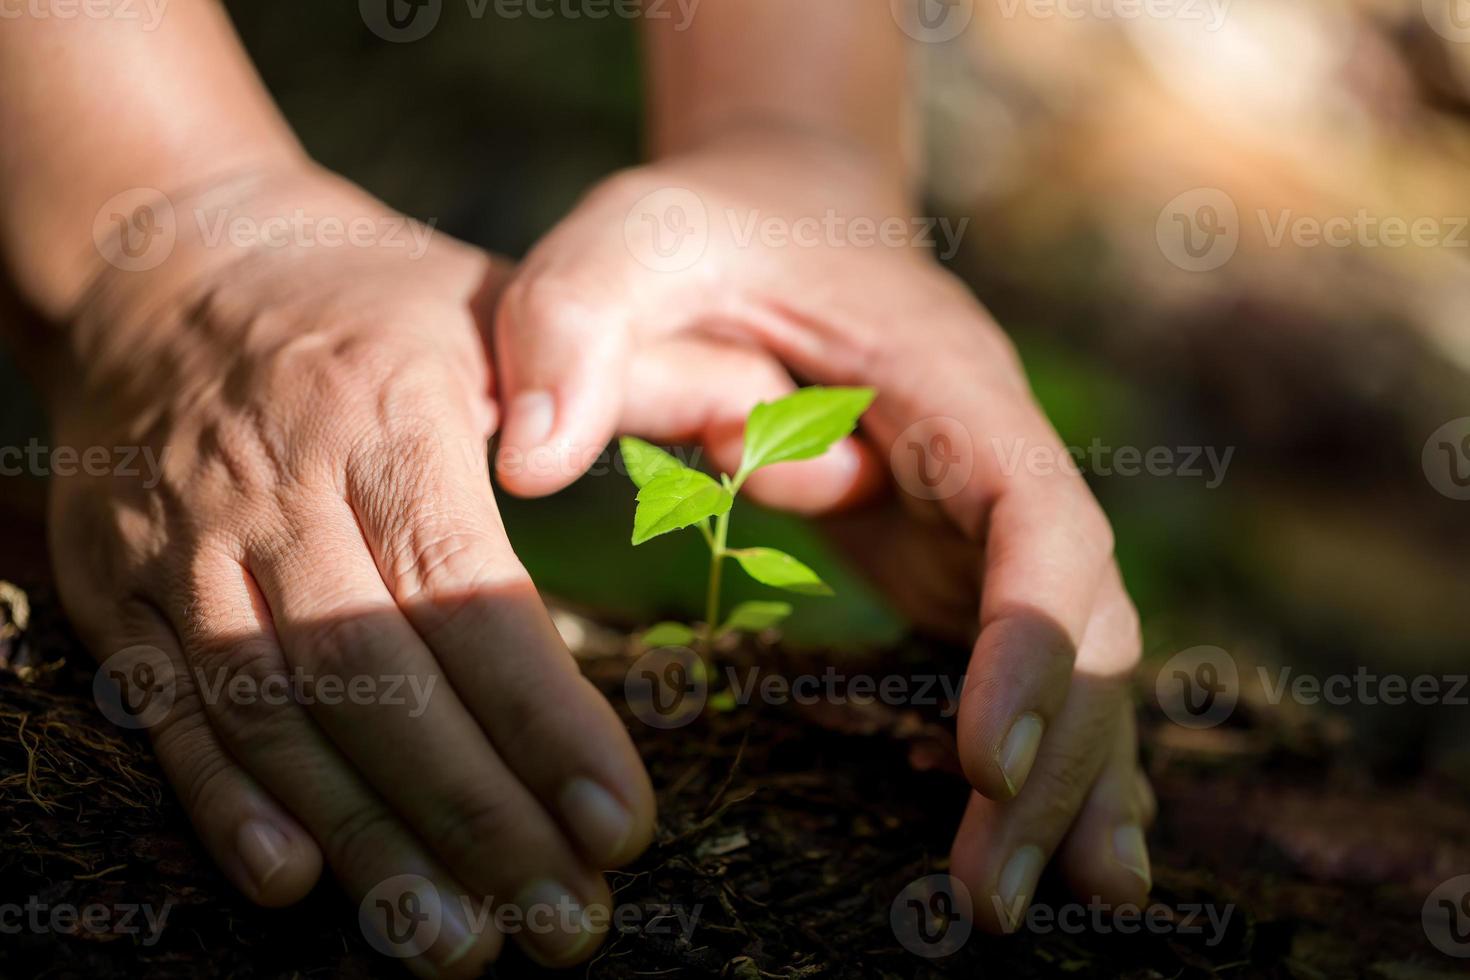 las manos sucias cuidan plantar árboles en la tierra el día mundial del medio ambiente. joven pequeño verde nuevo crecimiento de la vida en el suelo en la naturaleza ecológica. la persona humana cultiva plántulas y protege en el jardín. concepto de agricultura foto